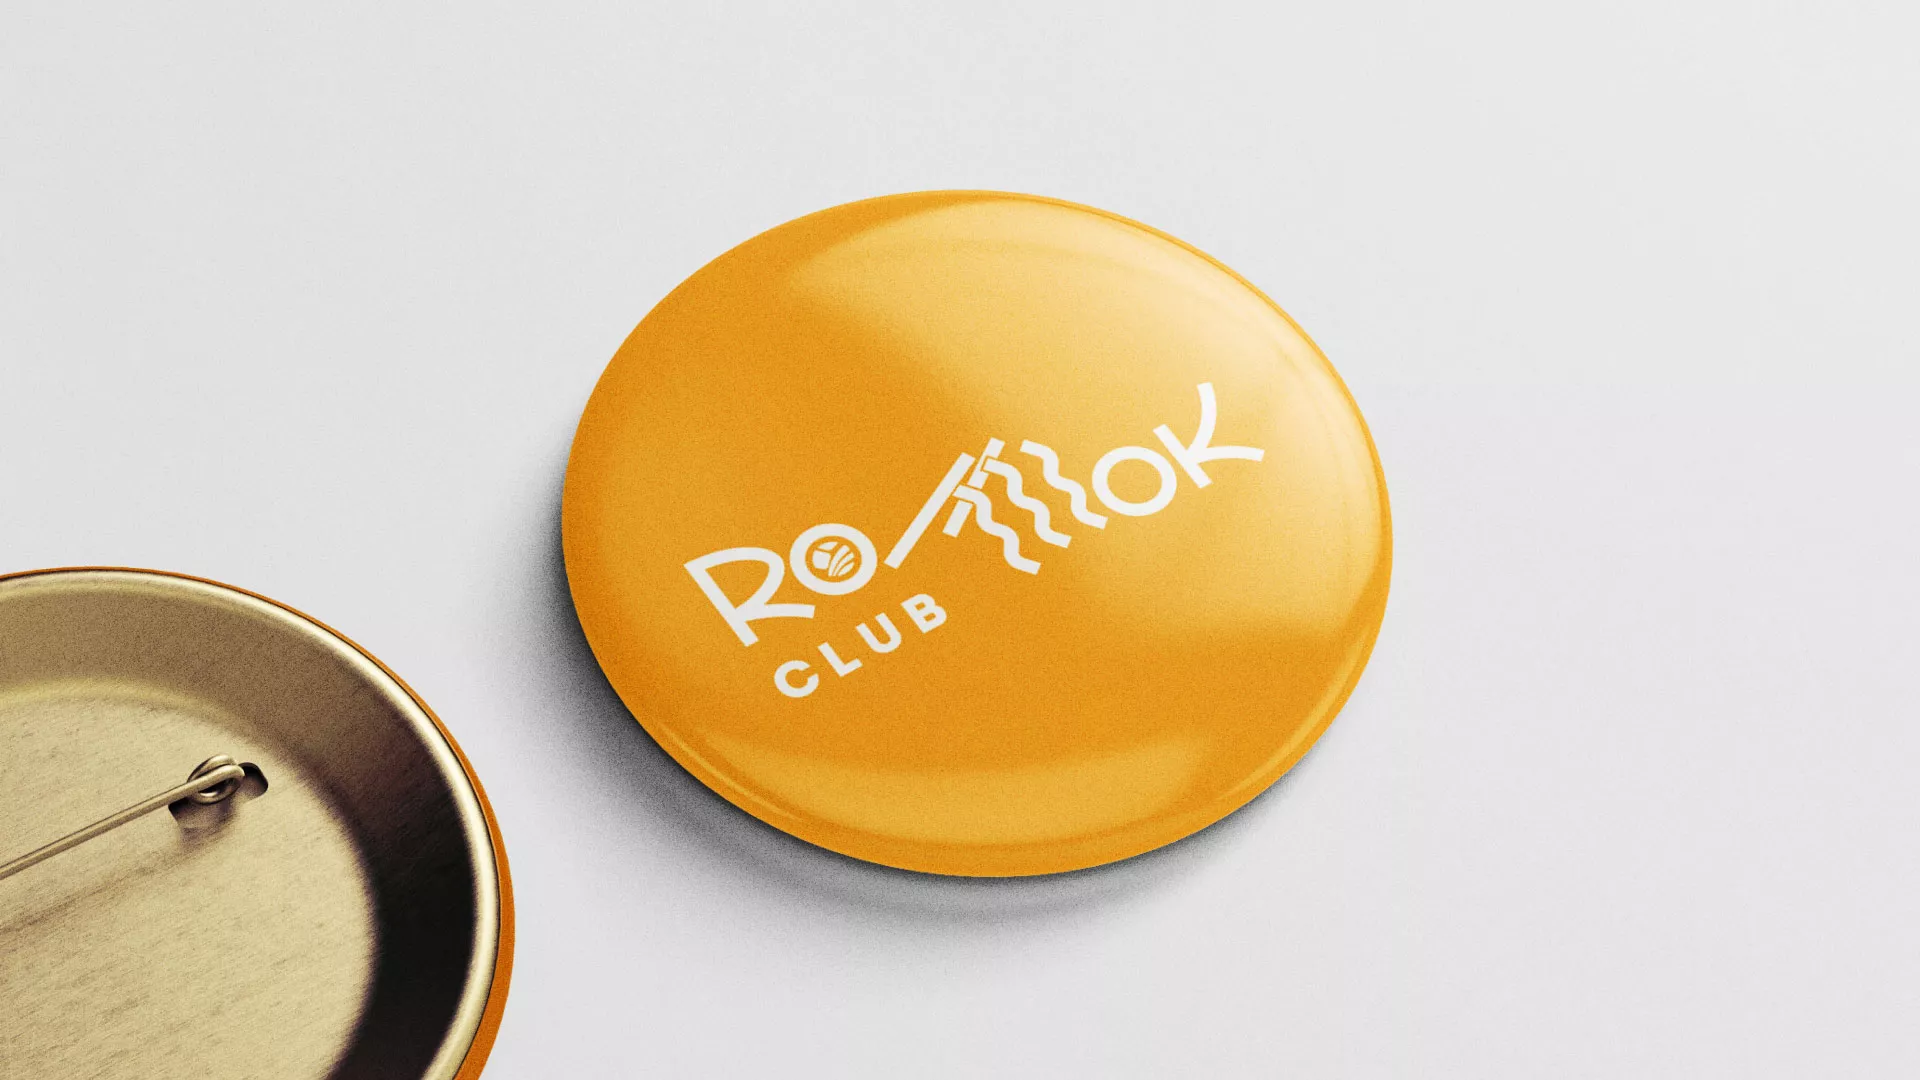 Создание логотипа суши-бара «Roll Wok Club» в Усть-Куте